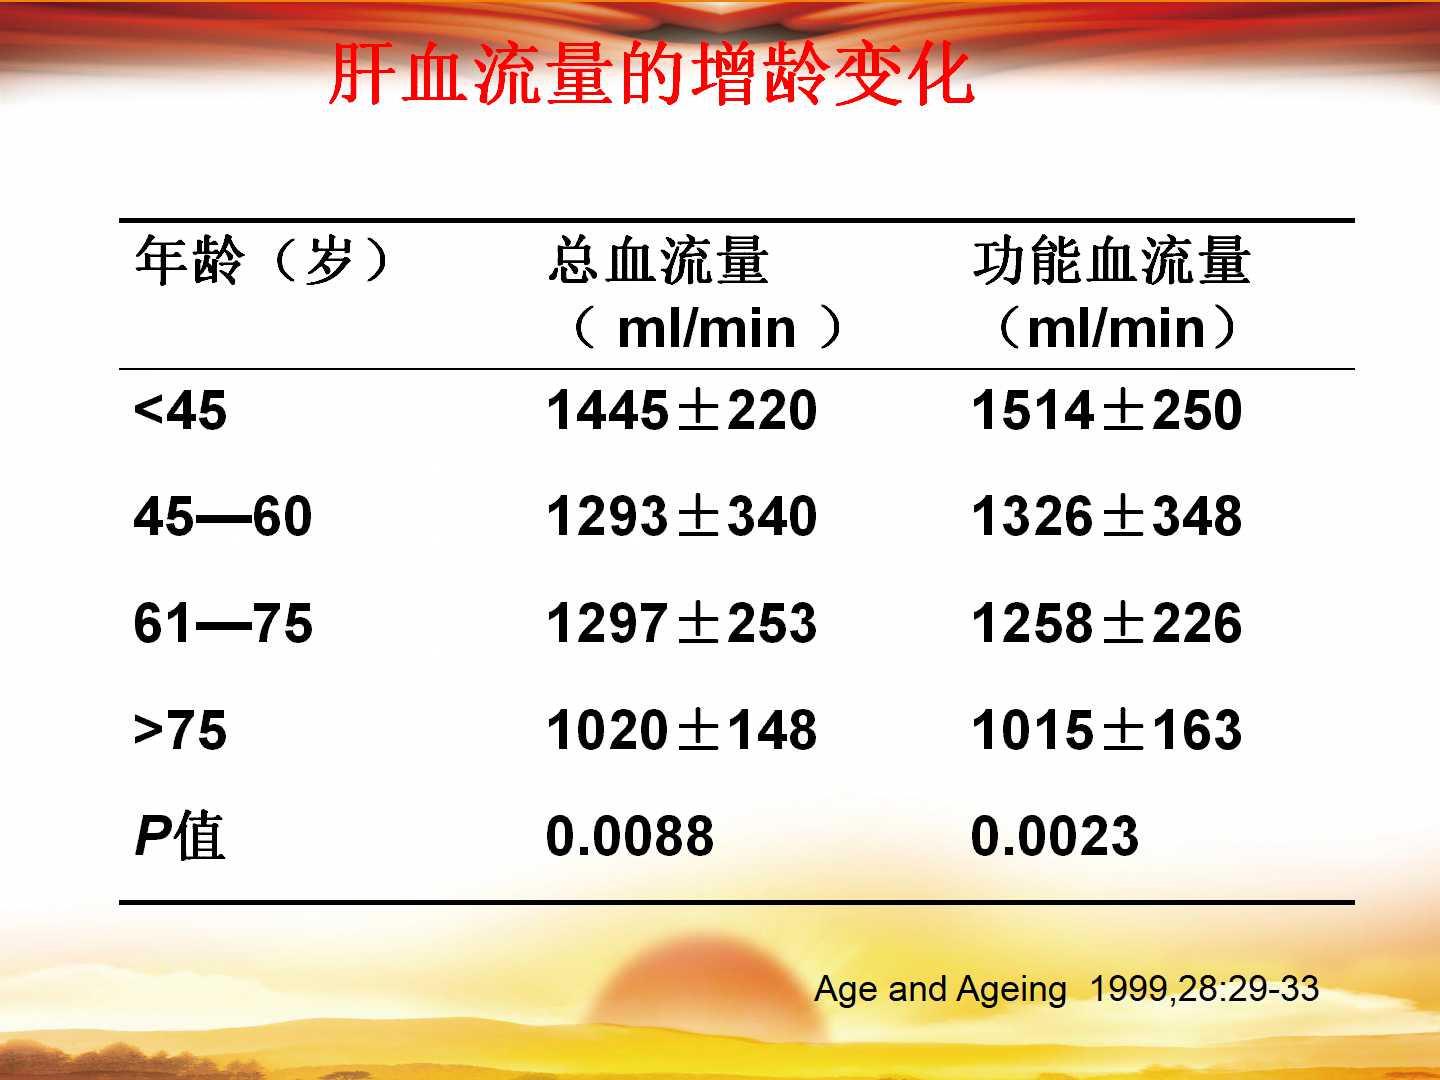 消化酶制剂在老年人消化不良中的应用